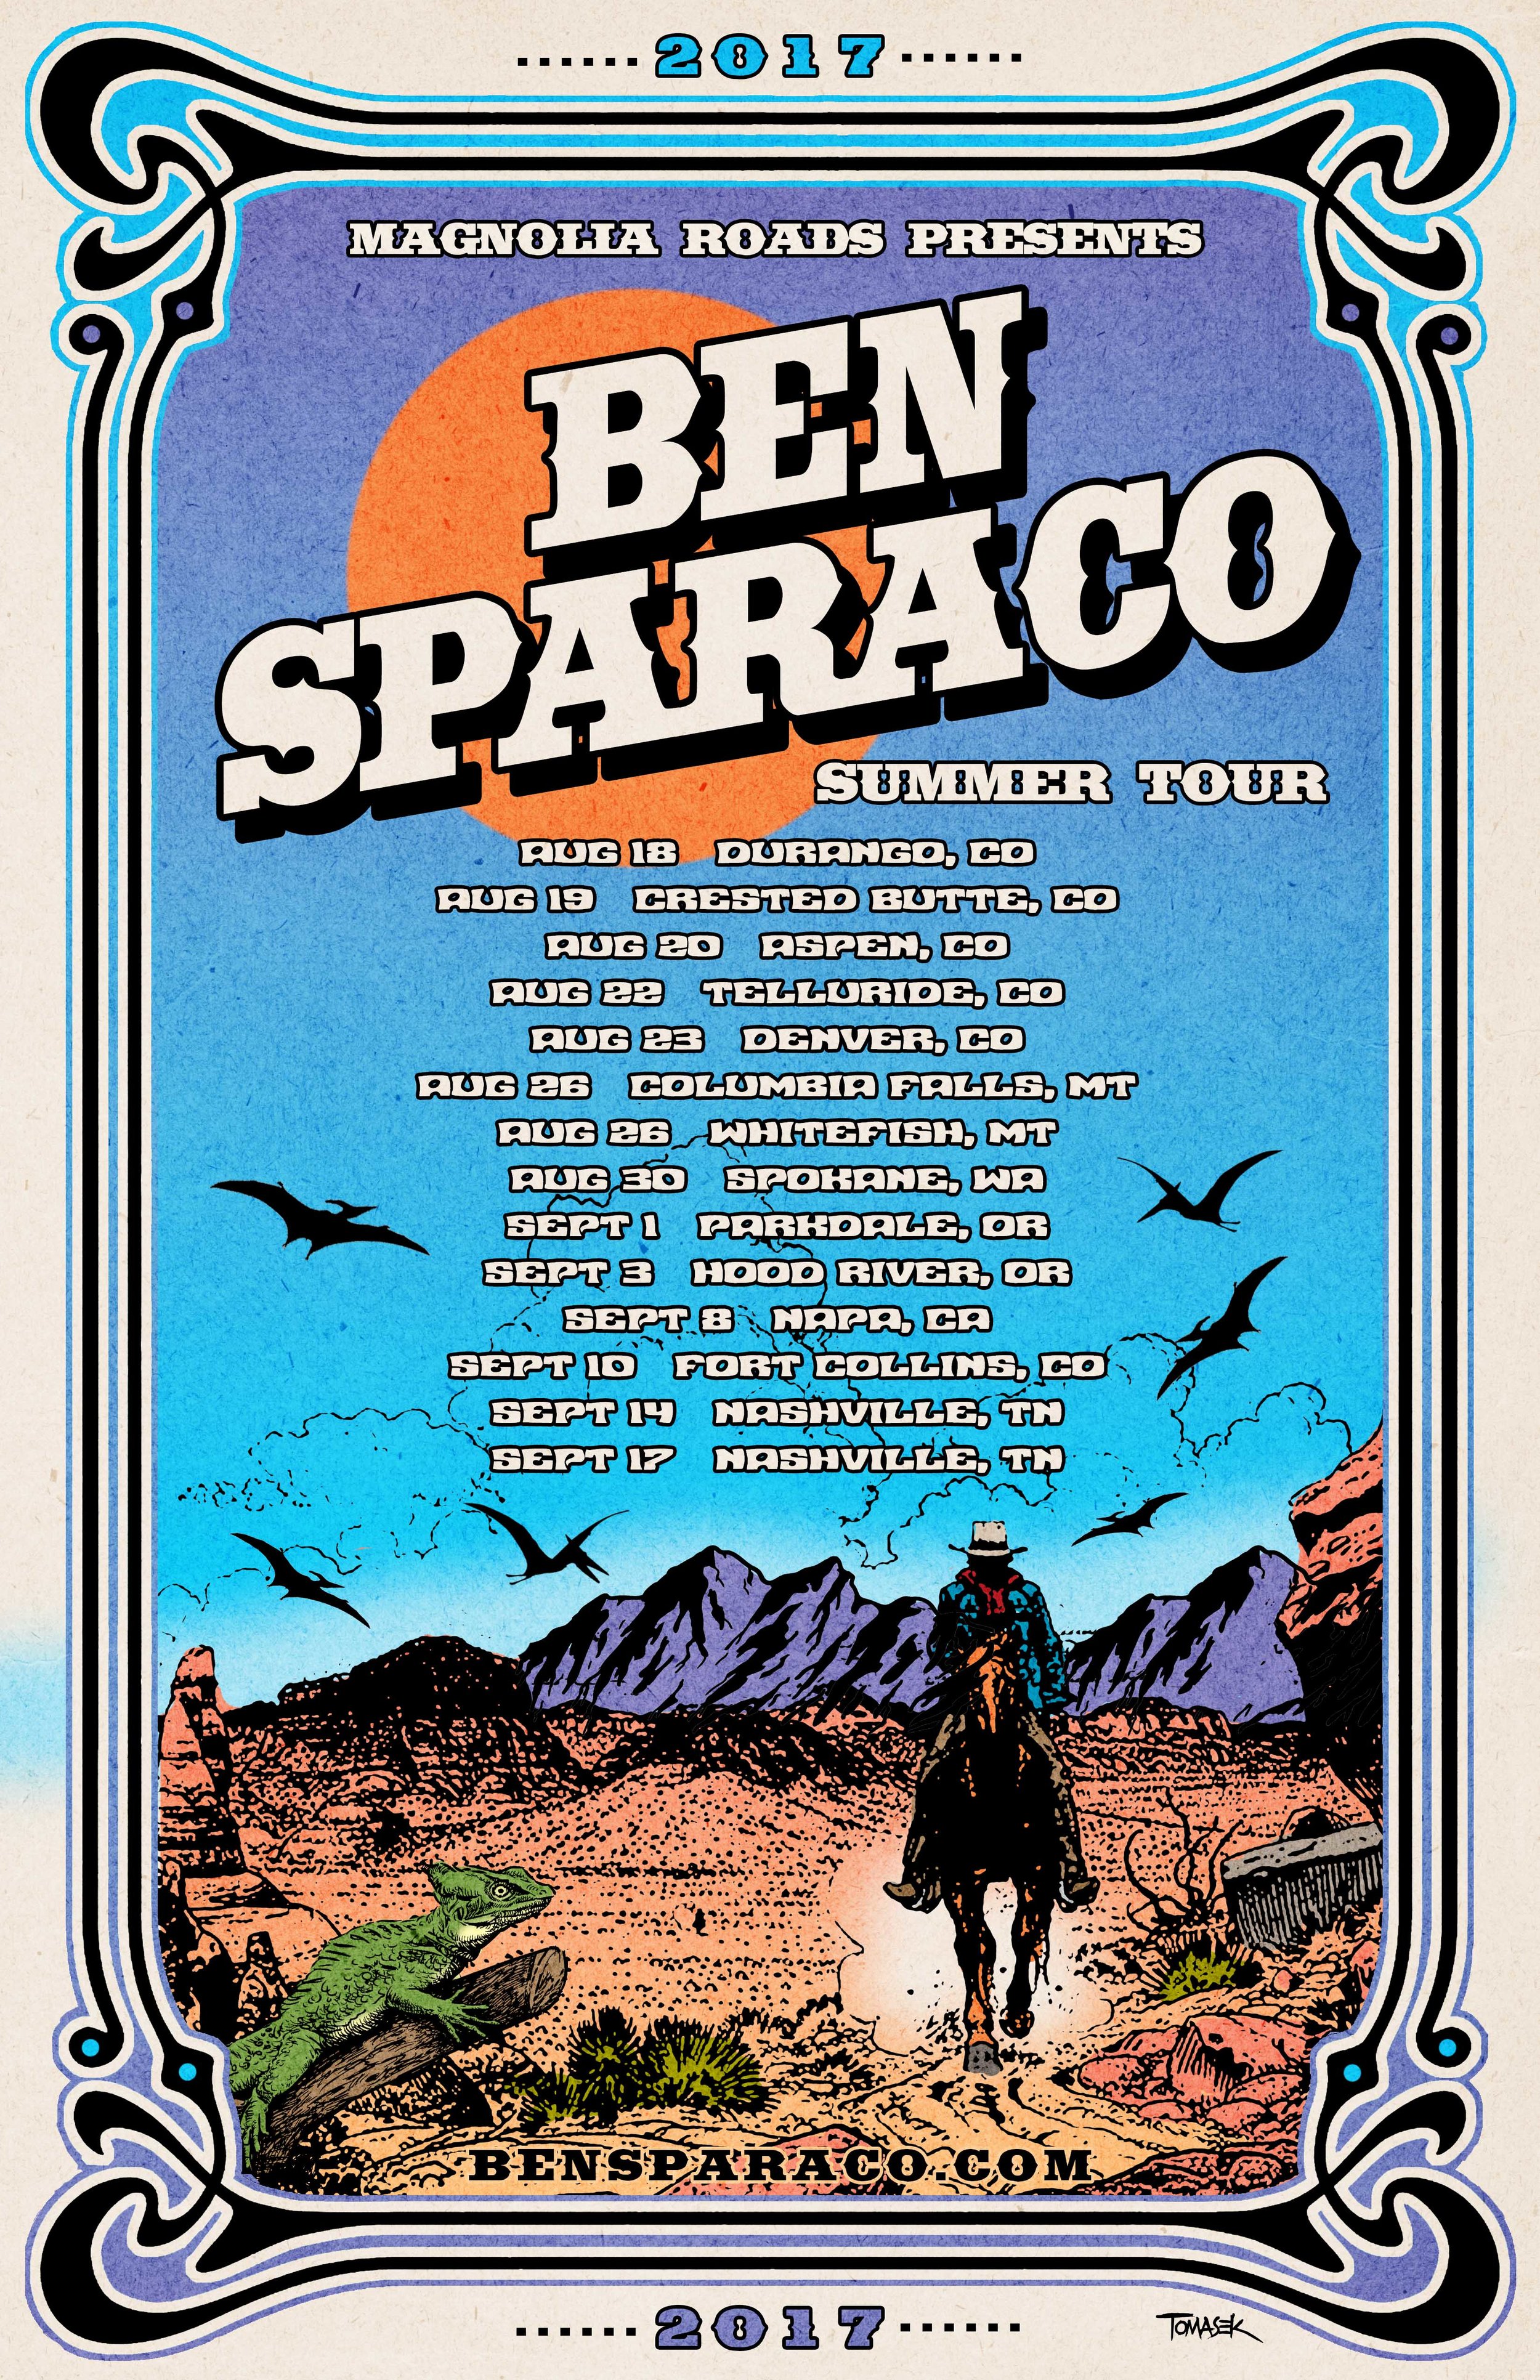 2017 summer tour Ben Sparaco.jpg